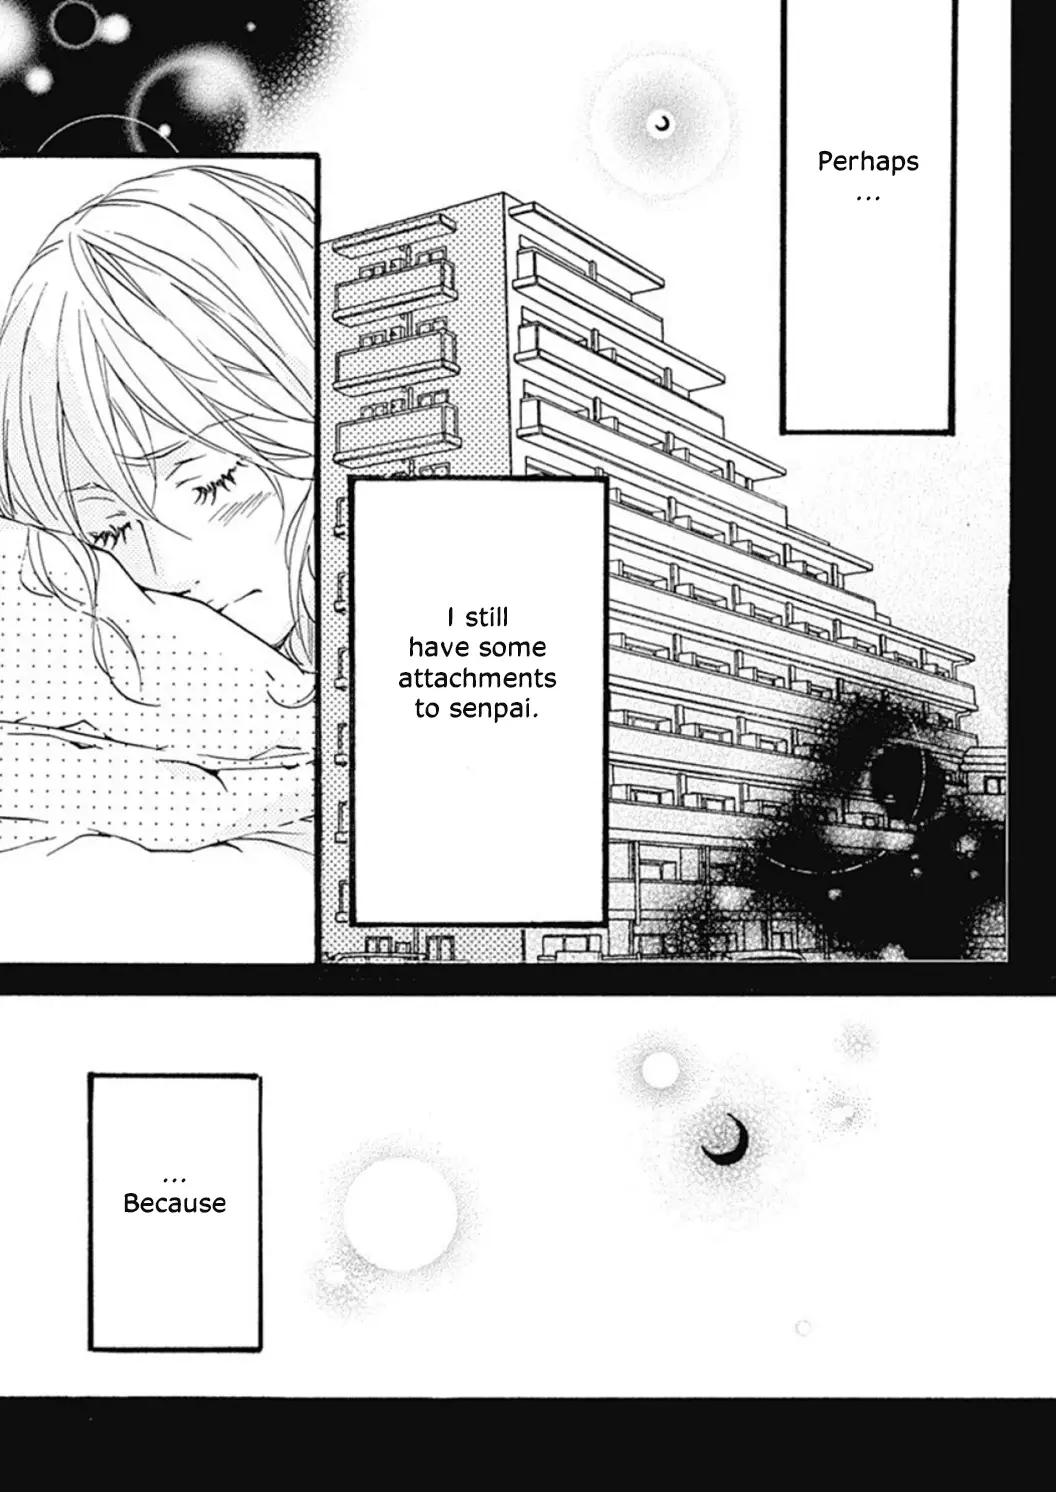 Tappuri No Kiss Kara Hajimete - 1 page 26-a0a0f8ee